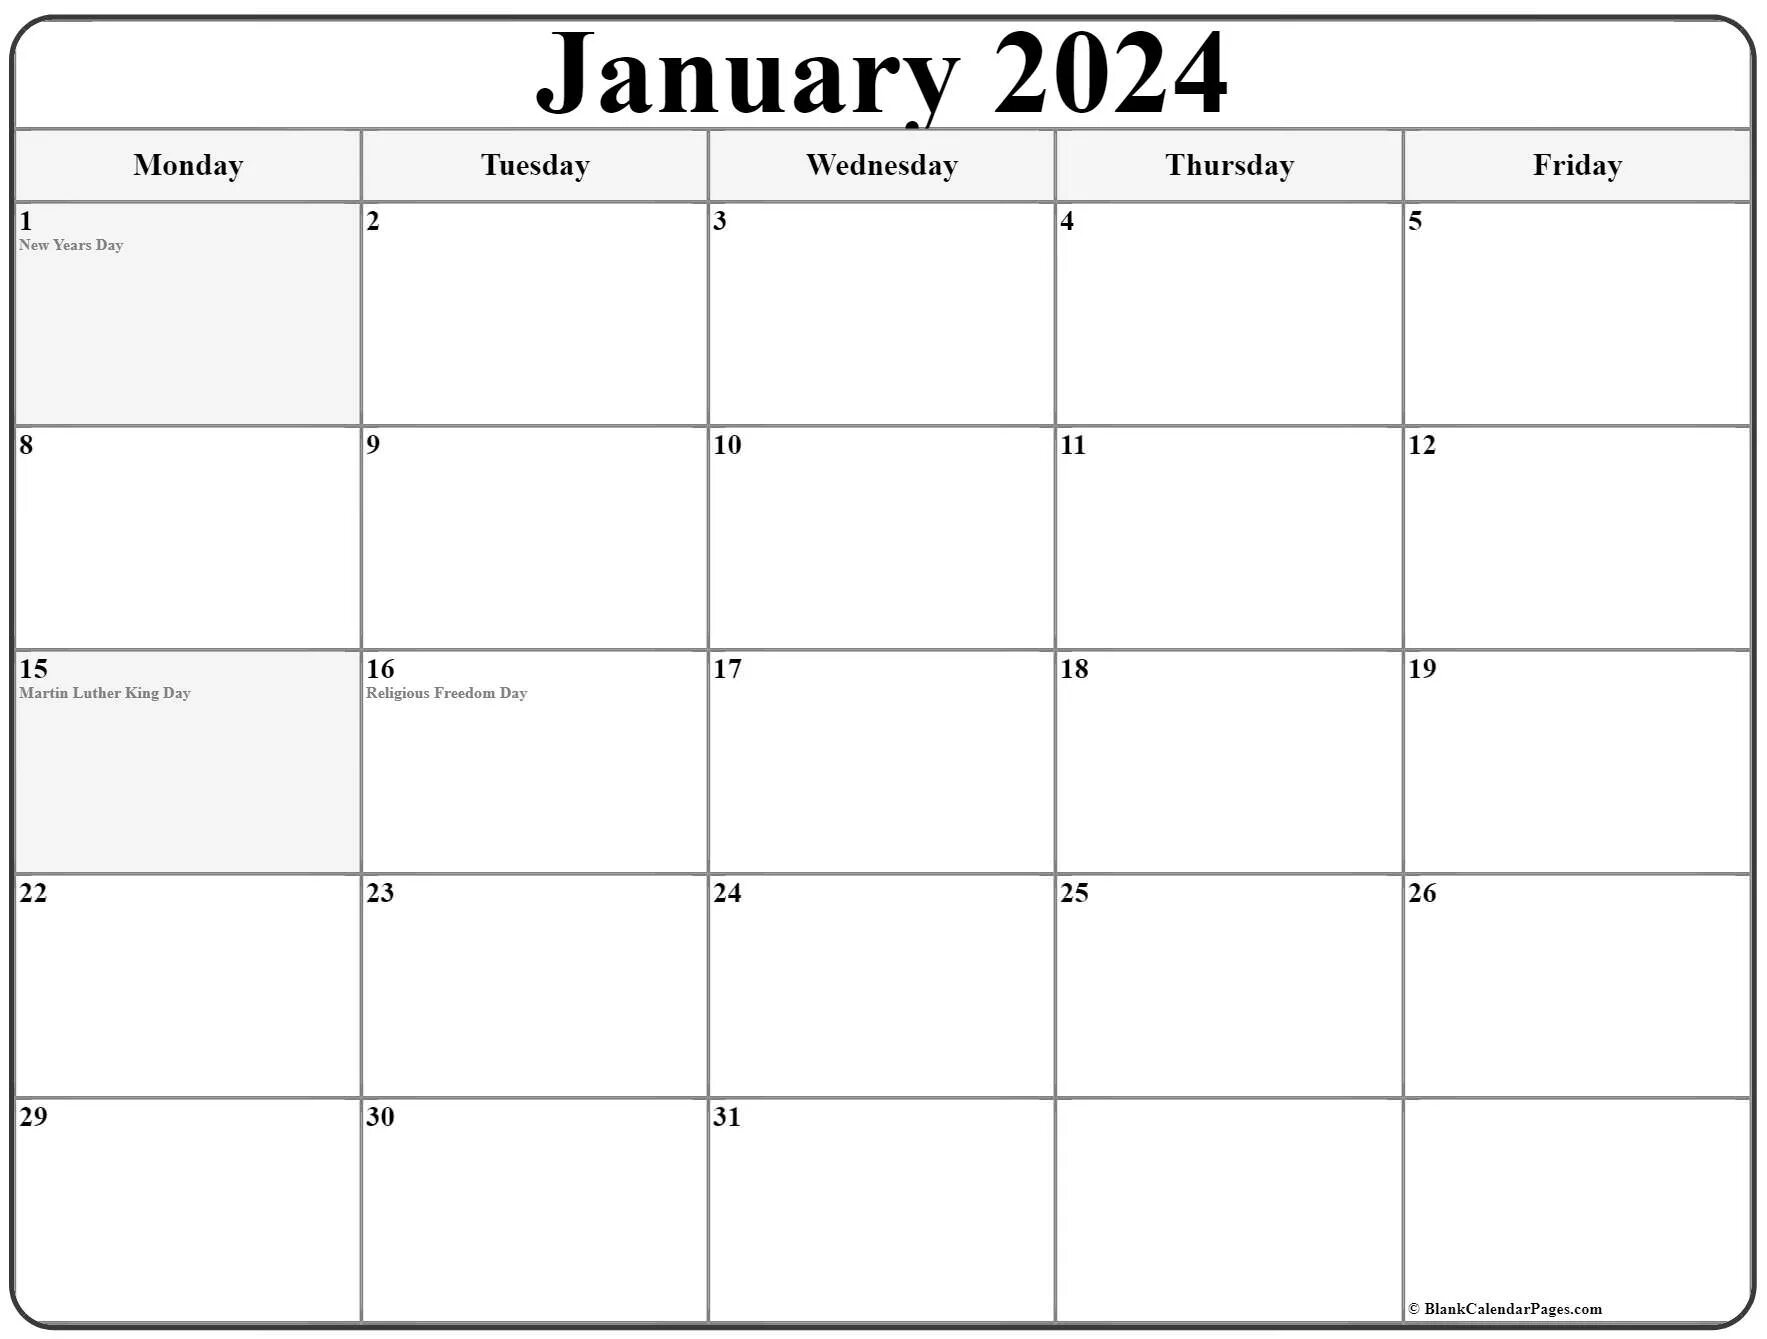 1 апреля 2024 понедельник. Понедельник календарь. Календарь на март 2022 года. Планер январь 2023. February 2023 Monday.